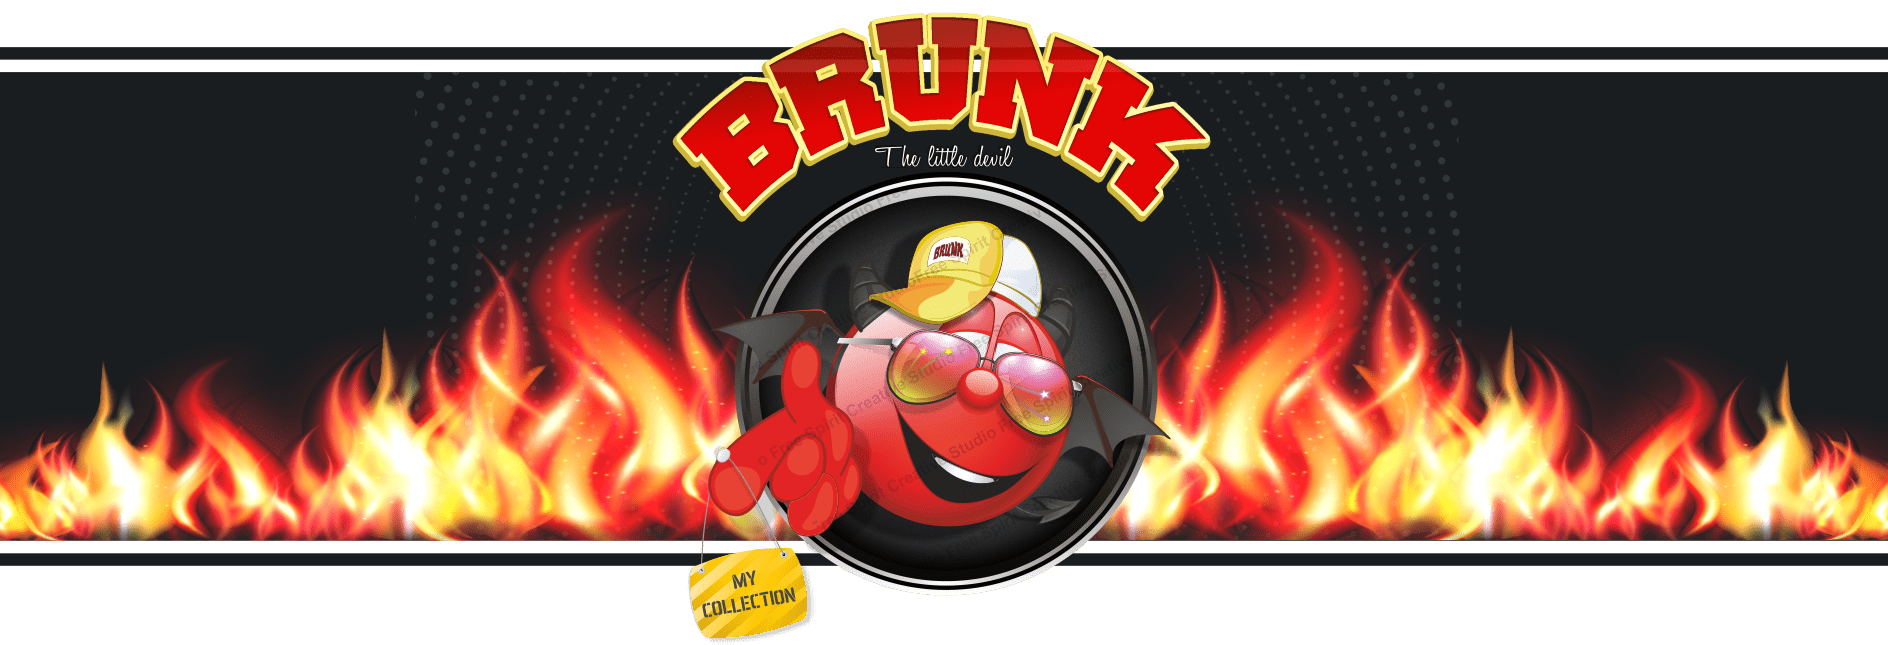 Brunk-personaggio-cartoons-vendita-licenza-di-uso